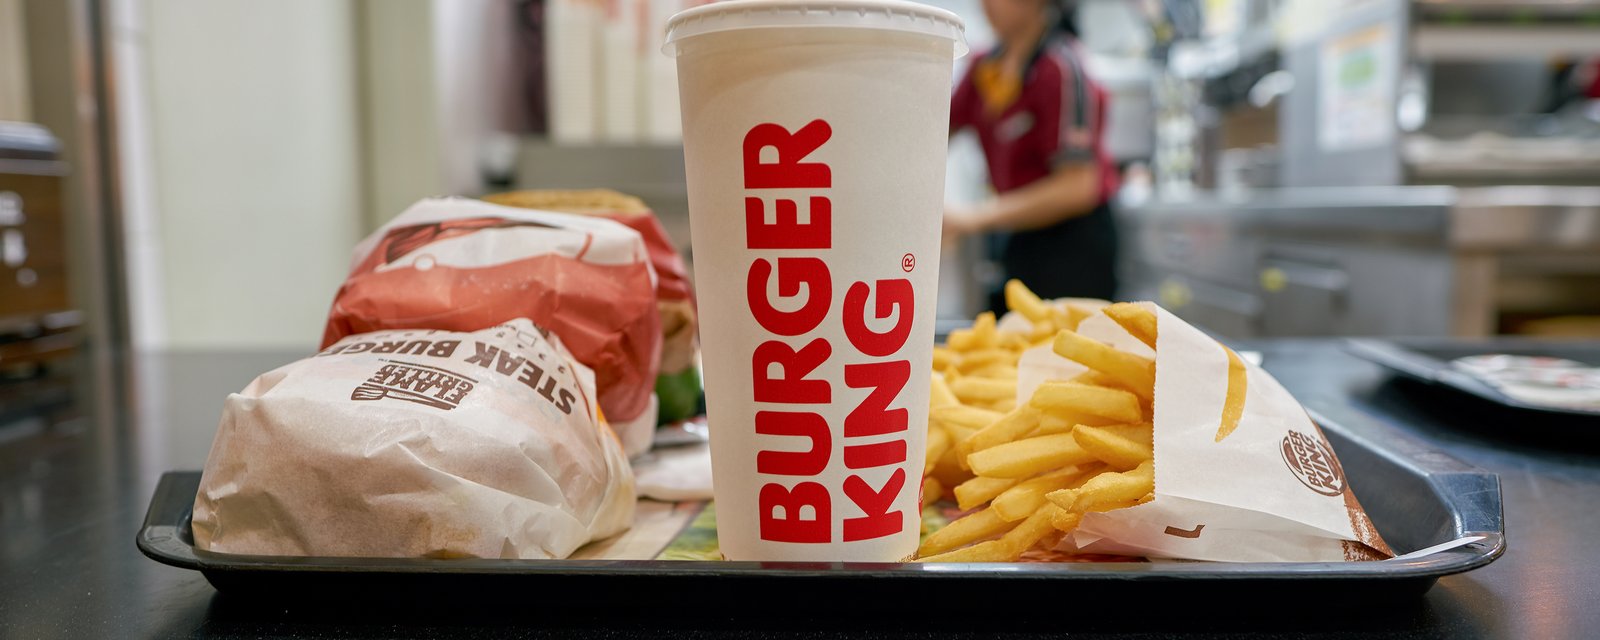 Des employés de fast-food payés à 20$/heure font sauter les prix sur le menu  